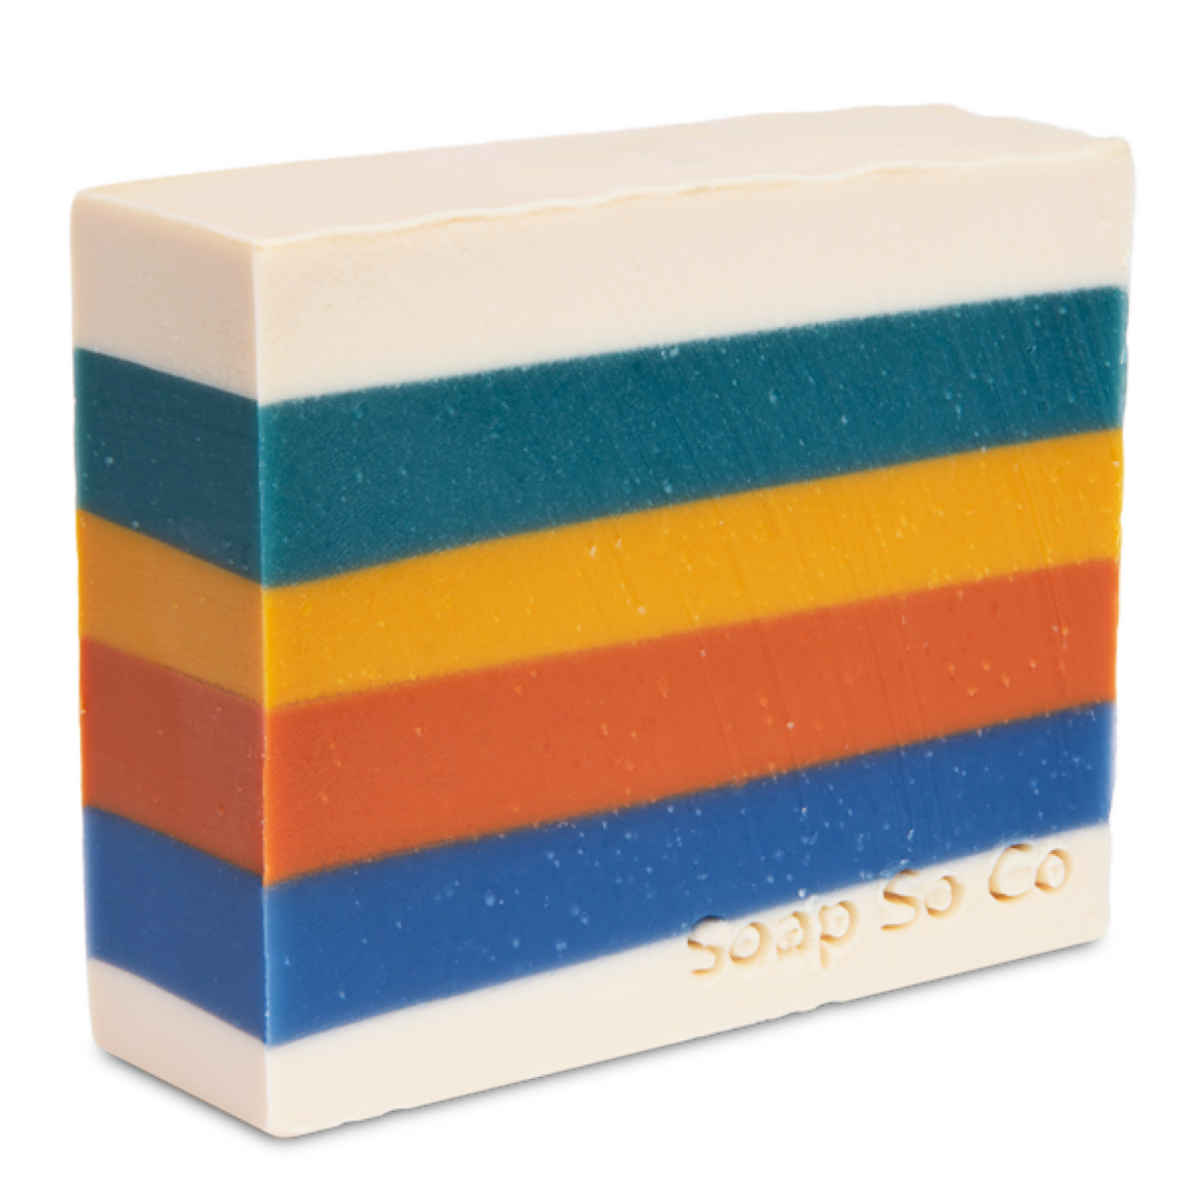 Autumn Sun Bar Soap